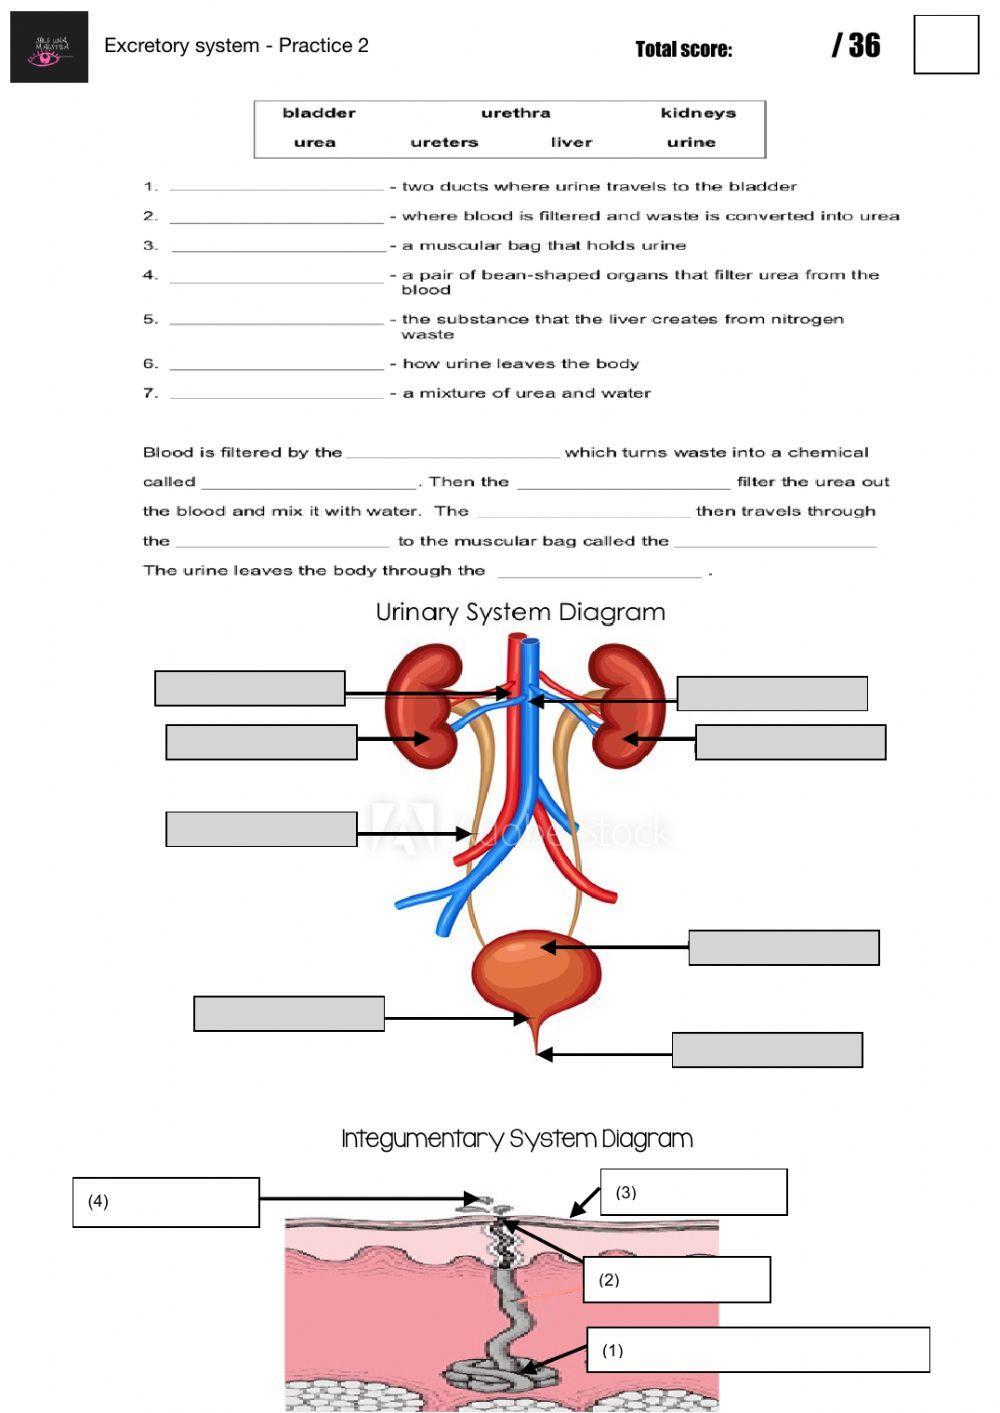 Excretory system - Practice 2